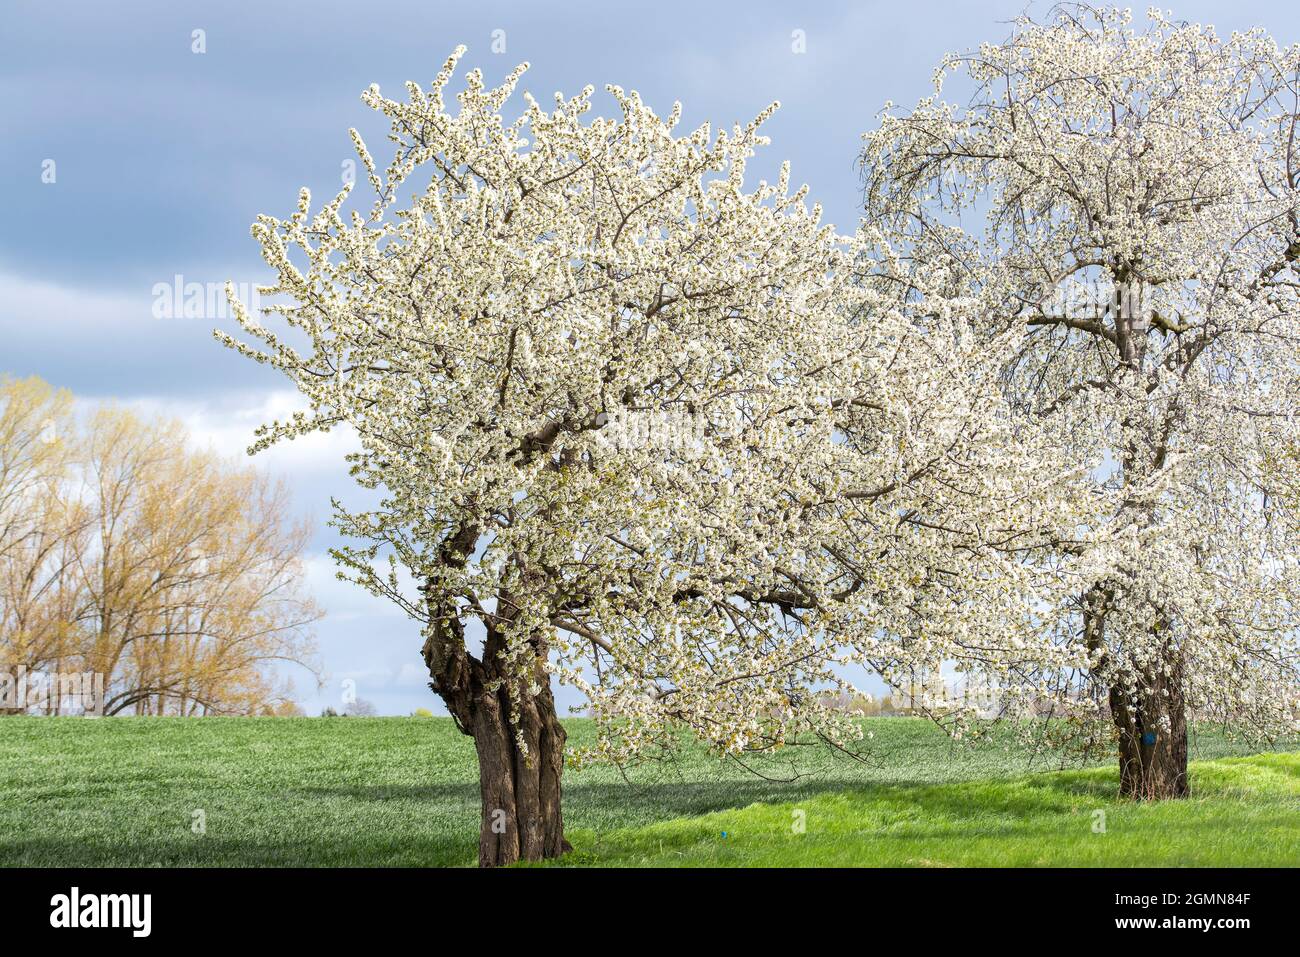 Cerisier sauvage, cerisier doux, gean, mazzard (Prunus avium), floraison dans un verger, Allemagne Banque D'Images